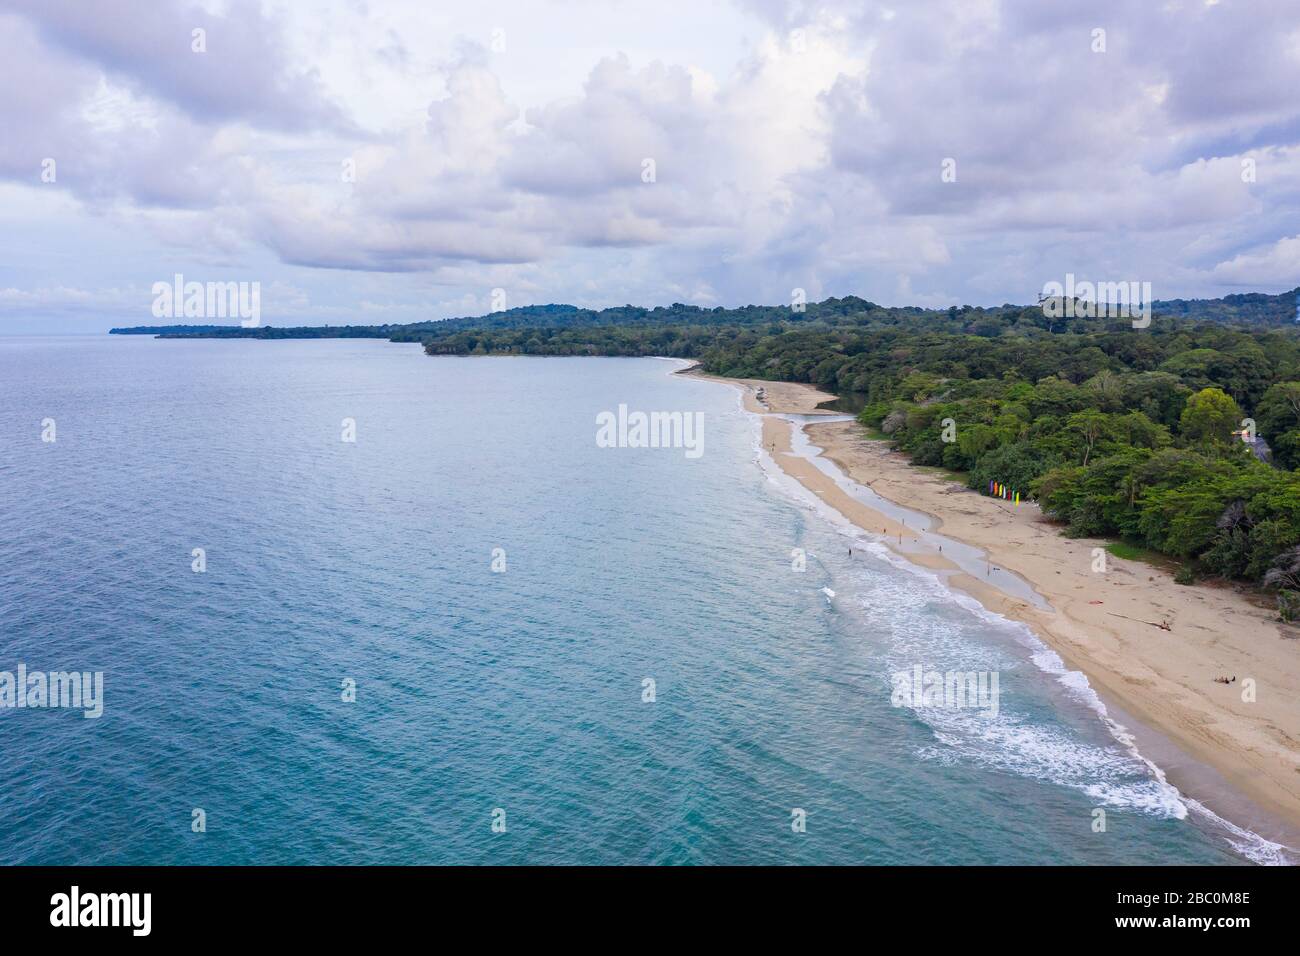 Vue aérienne en direction du sud le long de la côte des Caraïbes à Puerto Viejo de Talamanca dans la province de Limón, Costa Rica. Banque D'Images